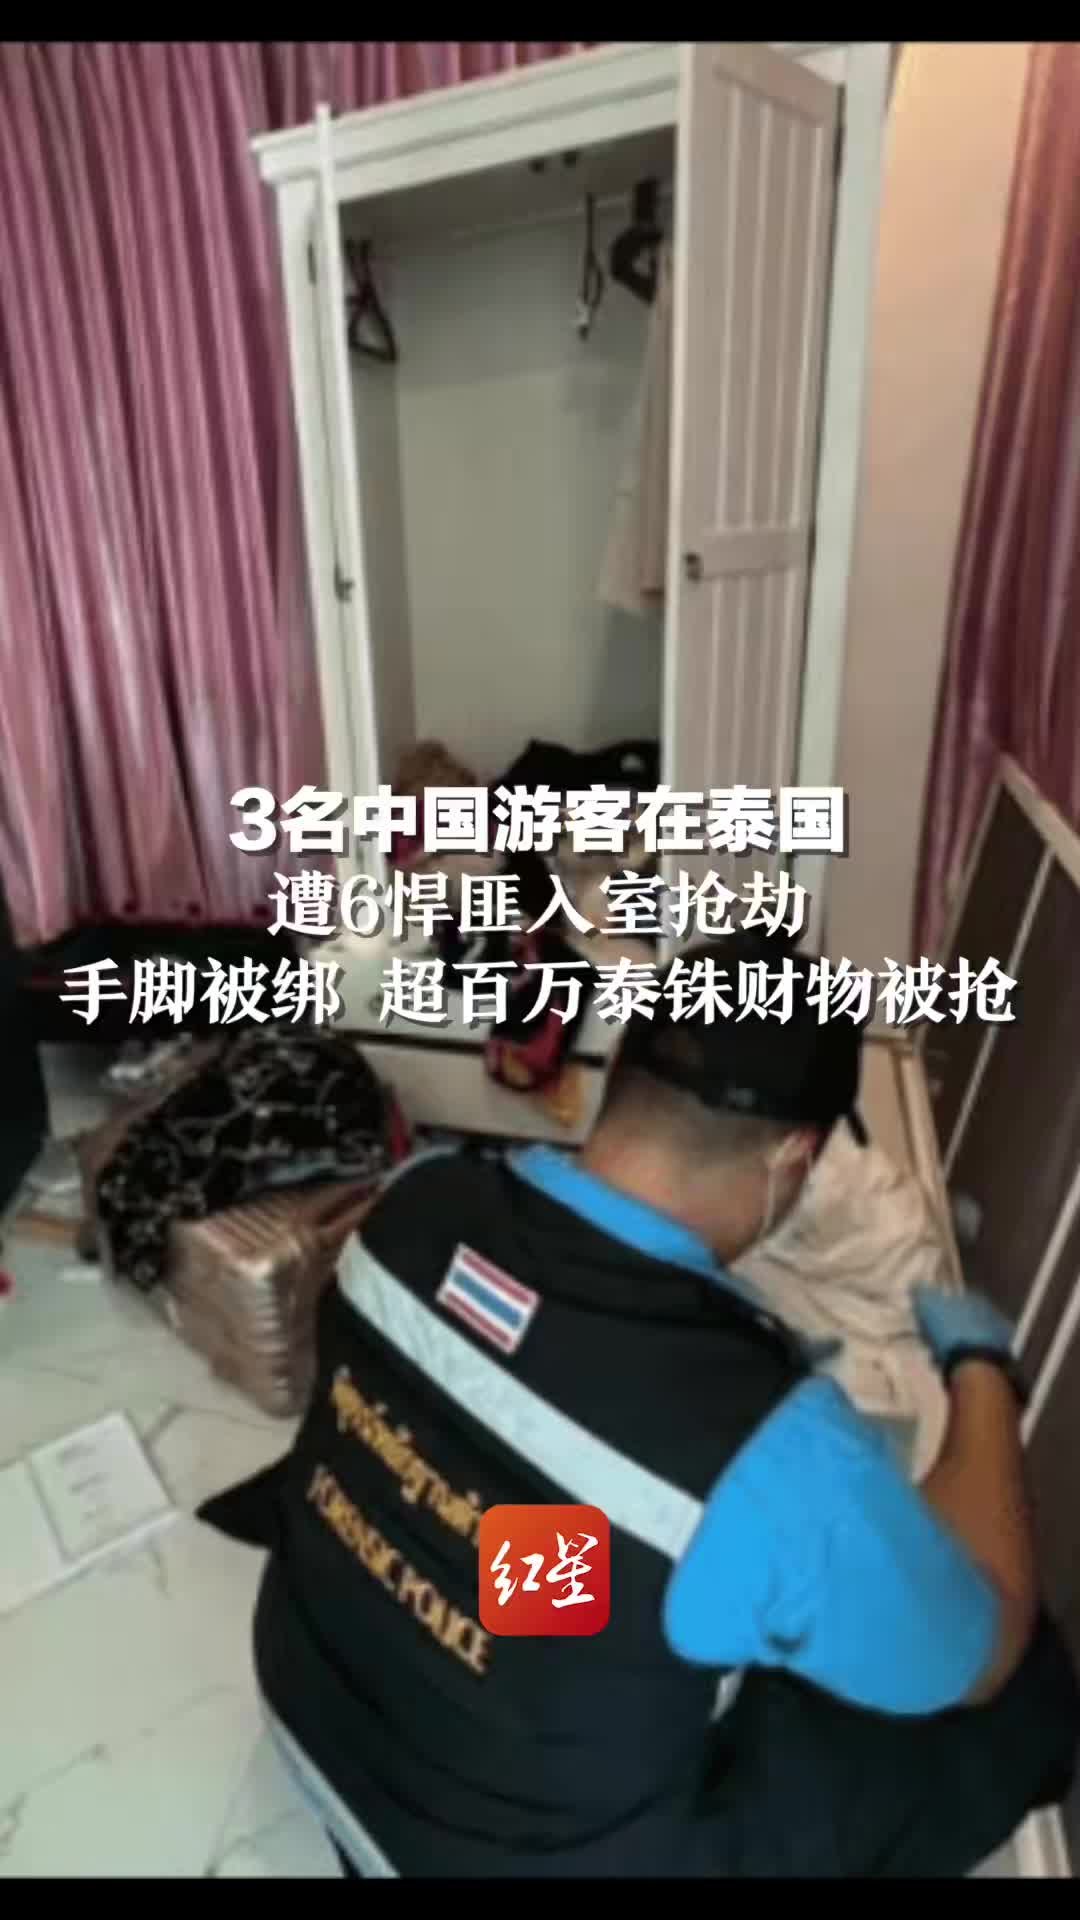 中国游客在春武里府使用假车牌被捕 - 今看泰国，泰国媒体平台，提供签证办理